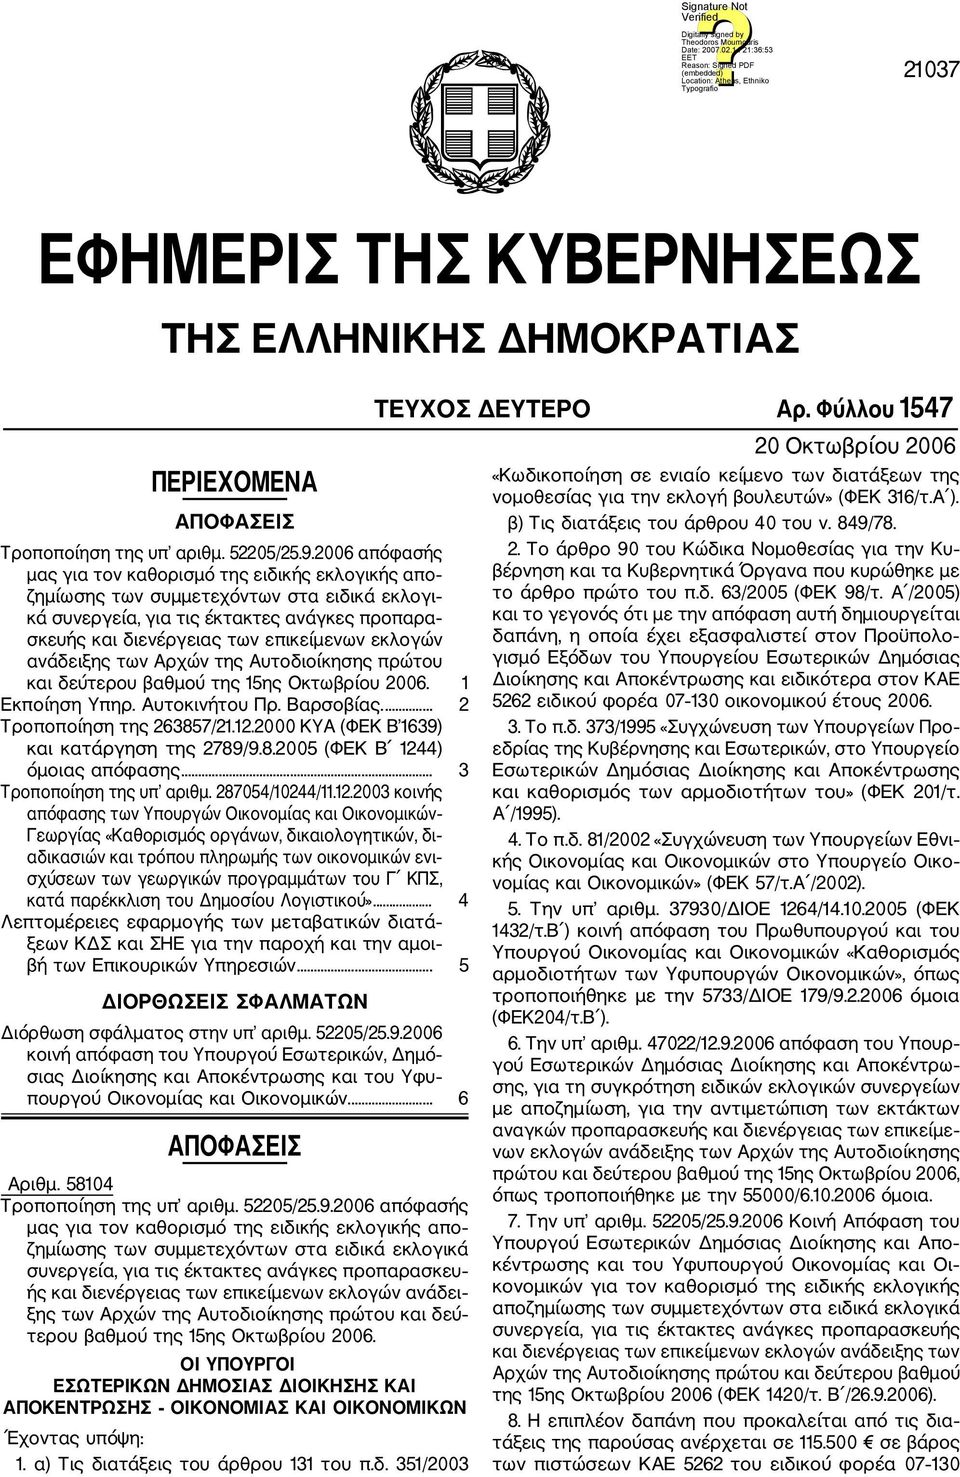 εκλογών ανάδειξης των Αρχών της Αυτοδιοίκησης πρώτου και δεύτερου βαθμού της 15ης Οκτωβρίου 2006. 1 Εκποίηση Υπηρ. Αυτοκινήτου Πρ. Βαρσοβίας.... 2 Τροποποίηση της 263857/21.12.